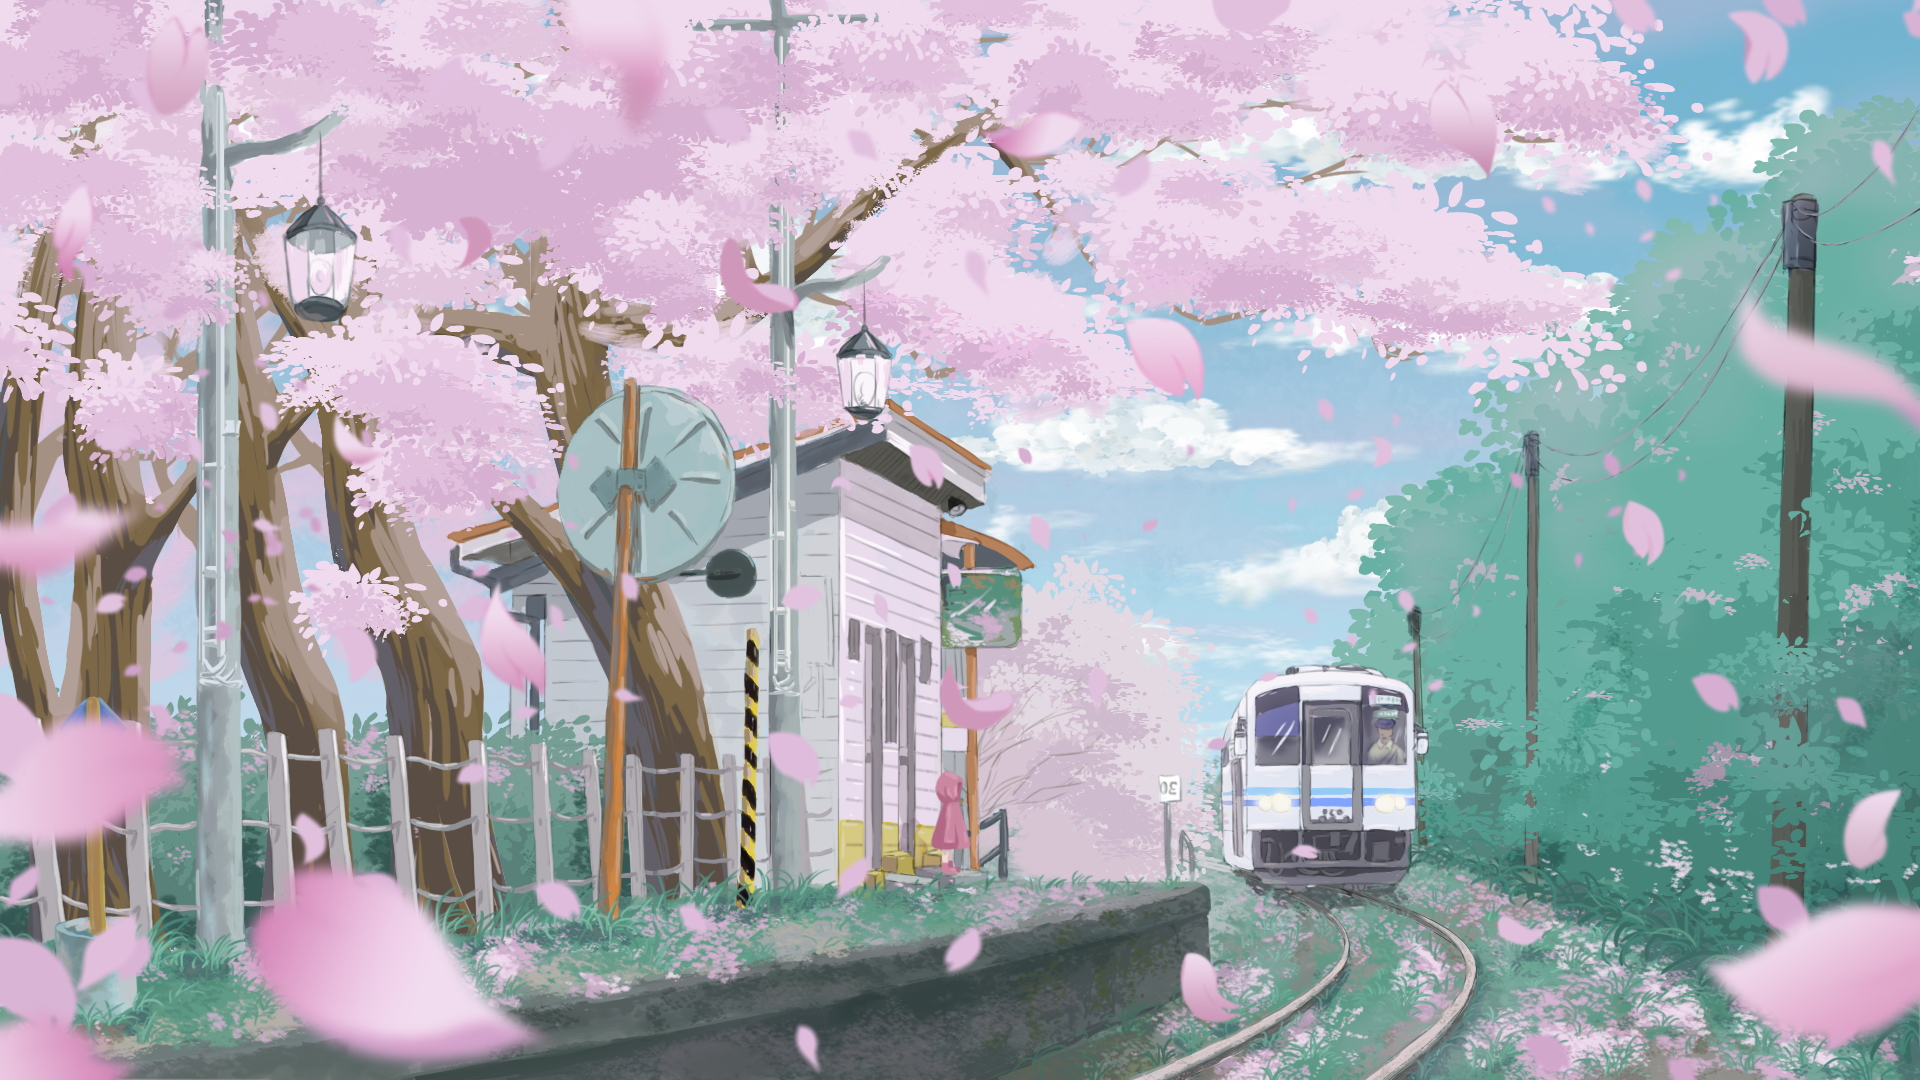 日本樱花电车壁纸图片